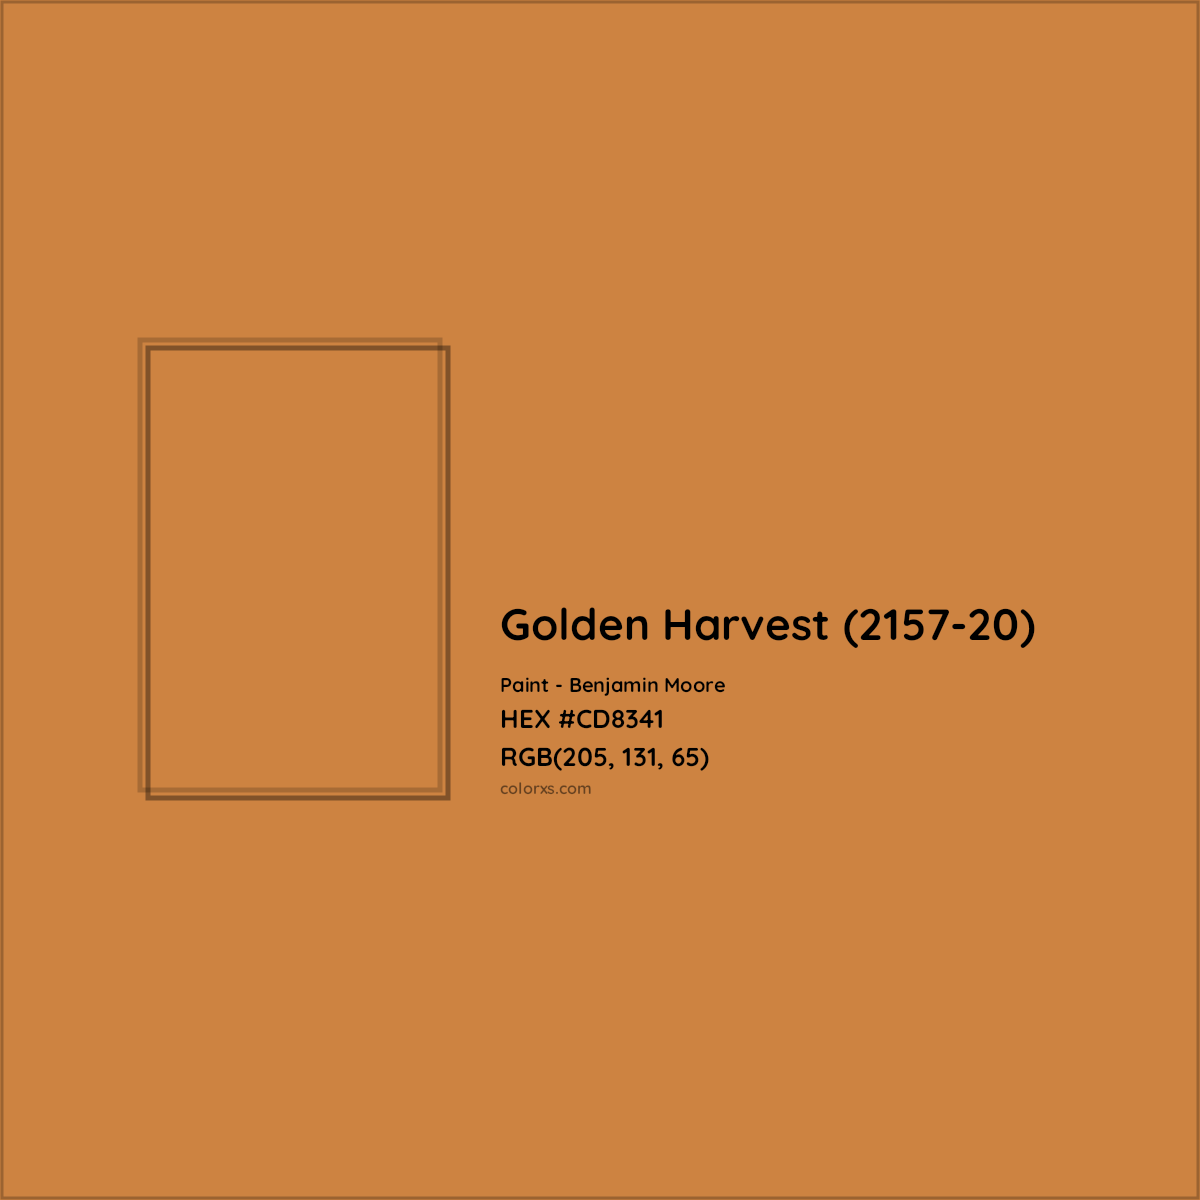 HEX #CD8341 Golden Harvest (2157-20) Paint Benjamin Moore - Color Code